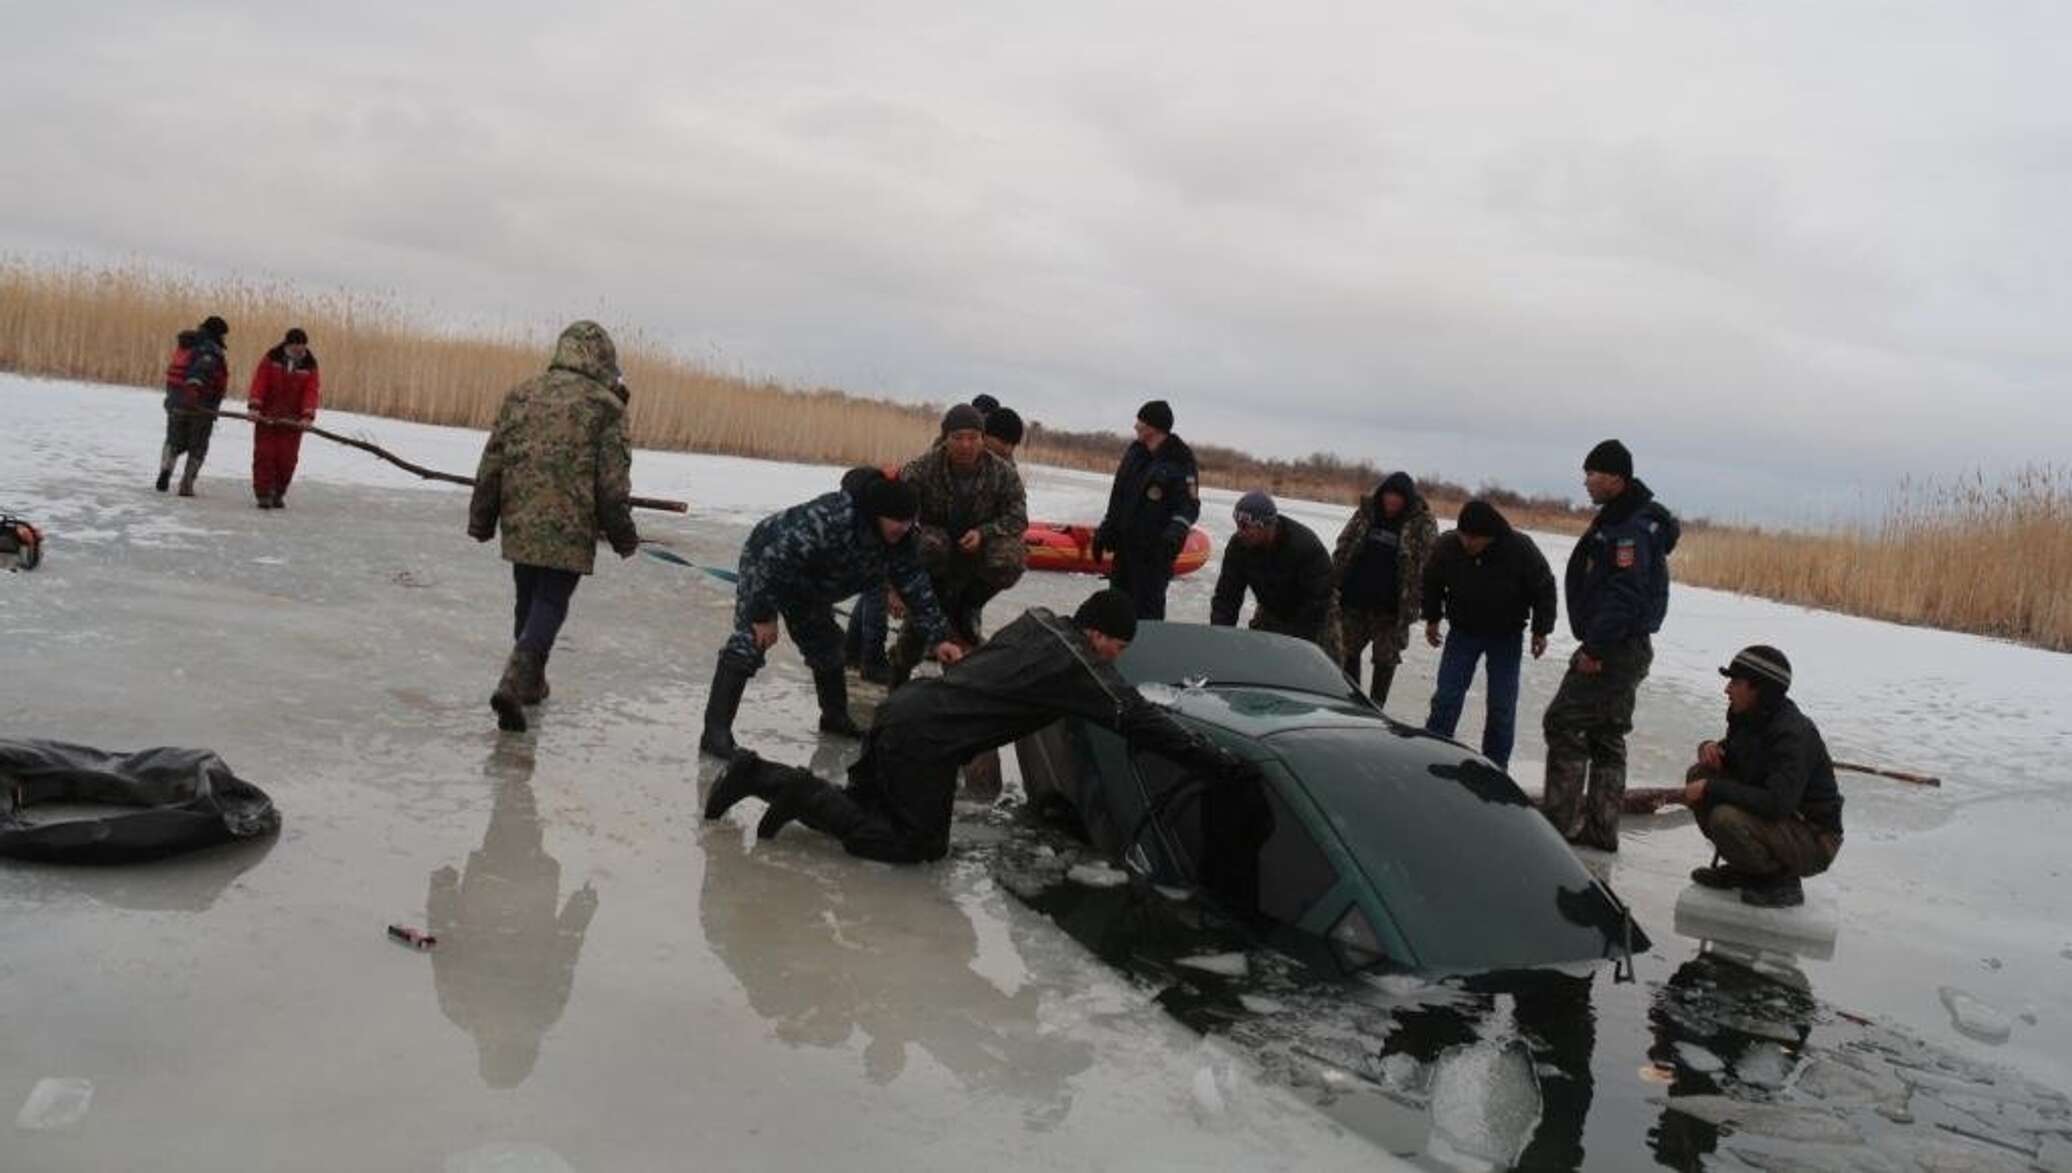 Последние новости озер. Происшествия на водных объектах. Машина провалилась под лед. Происшествие на водном объекте фото. Сегодня авария в Кызылординской области.